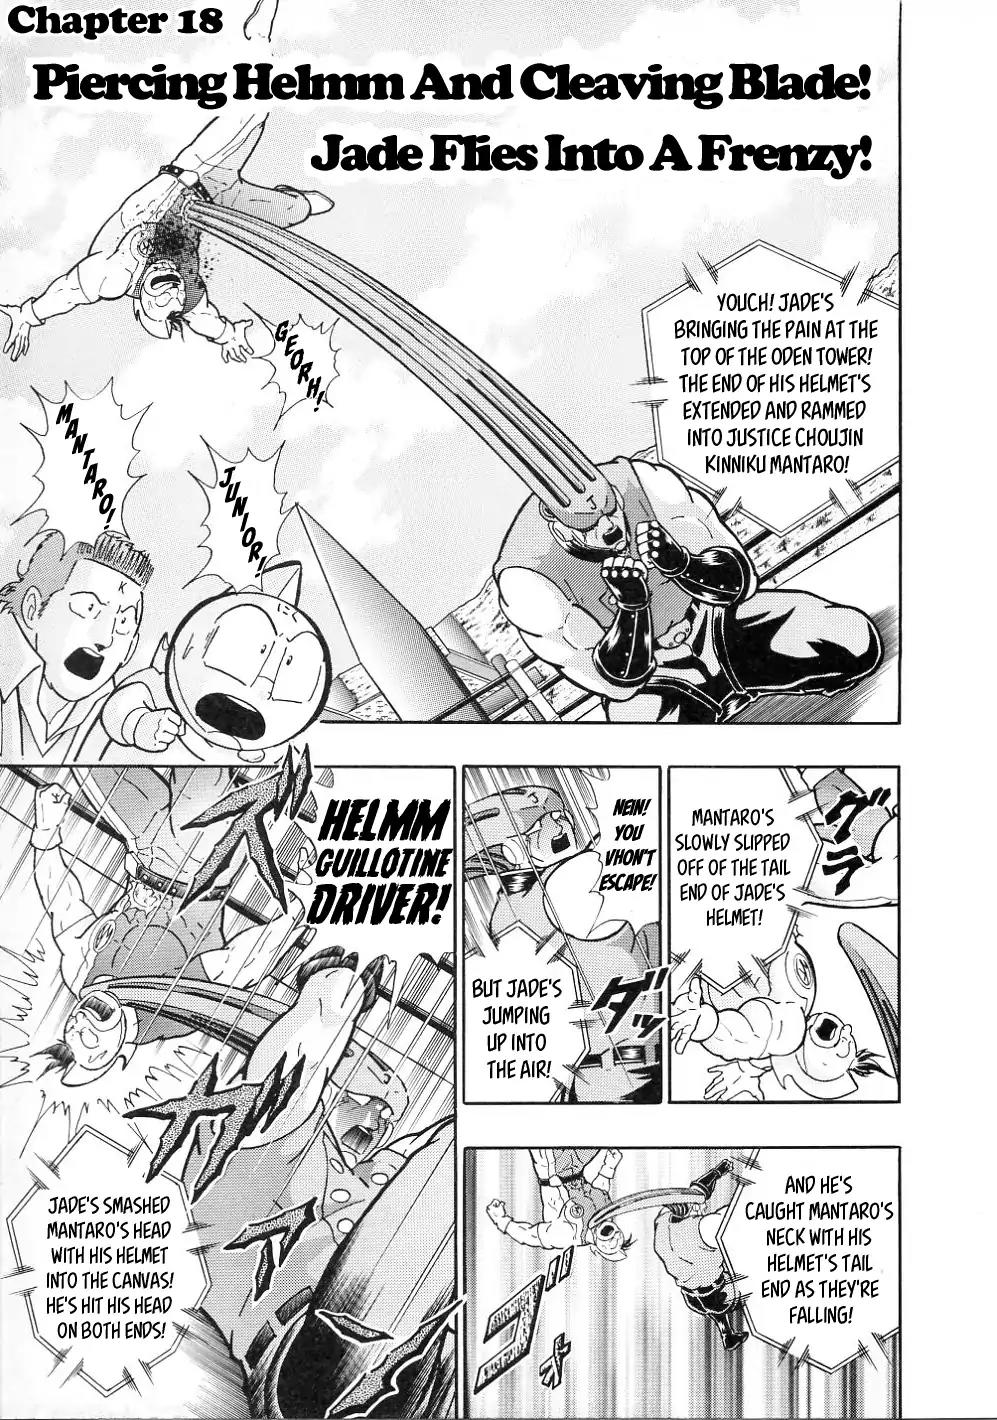 Kinnikuman II Sei - All Choujin Daishingeki Vol.2 Chapter 18: